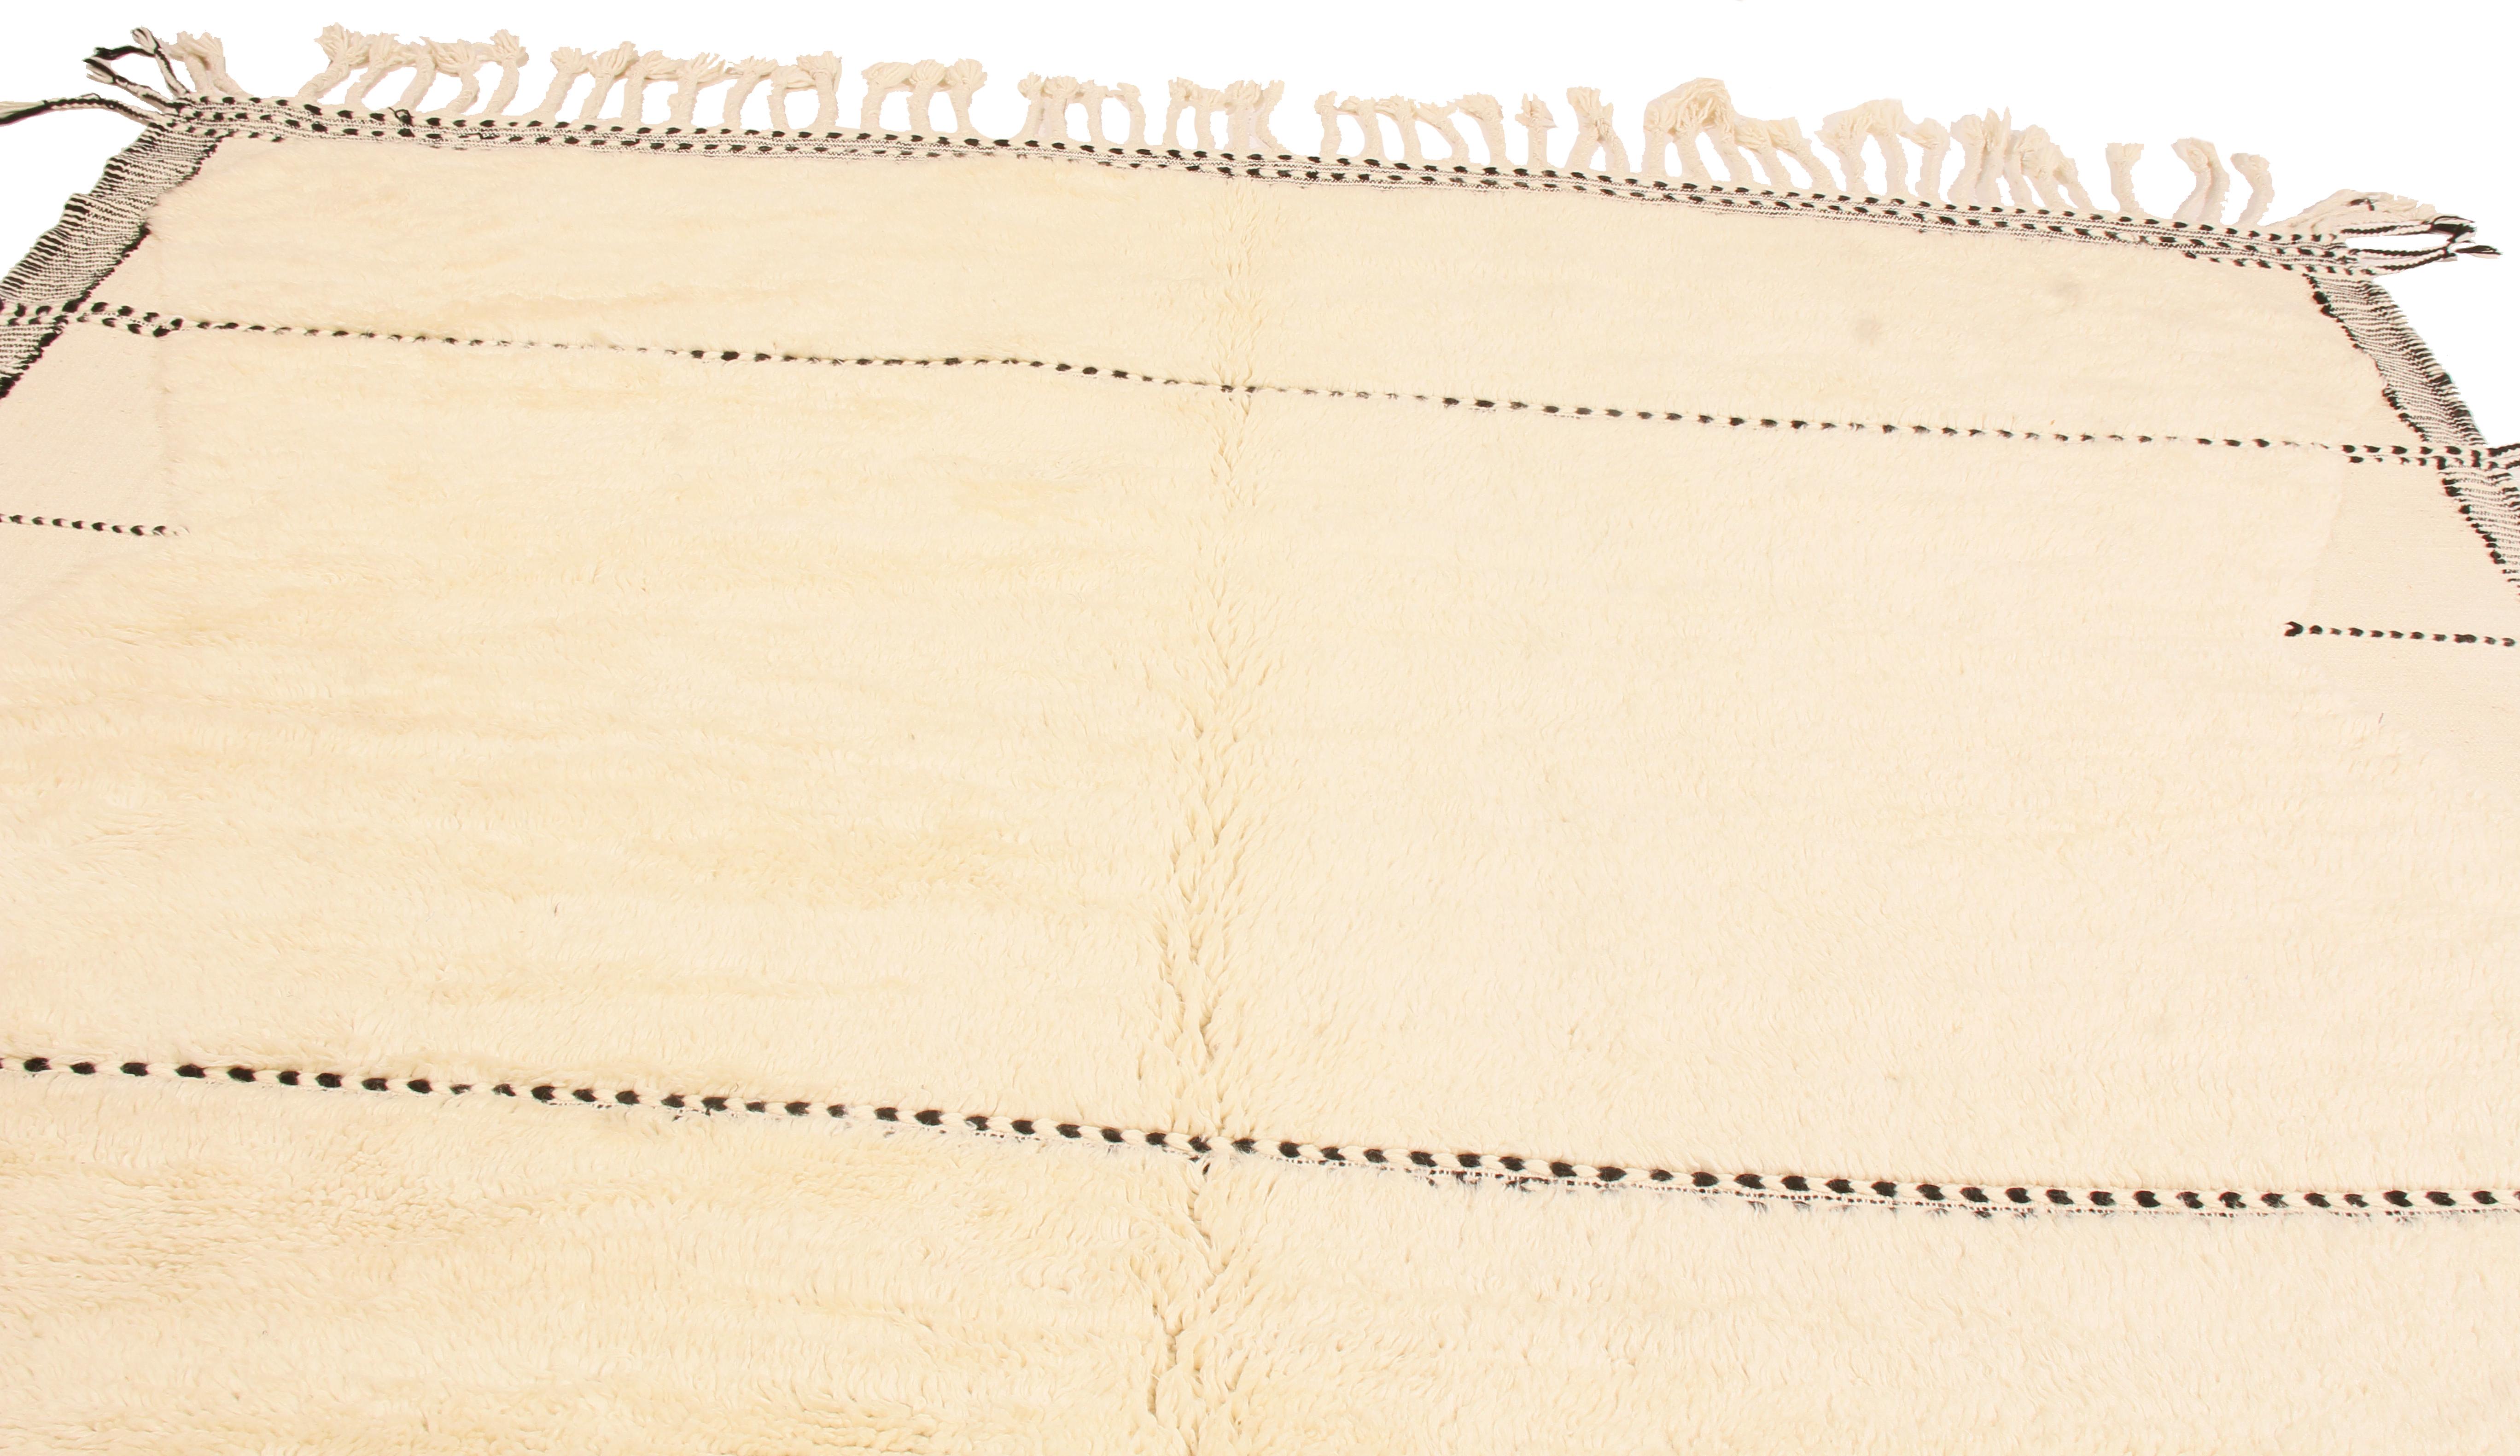 Dieser neue geometrische marokkanische Teppich stammt aus Marokko und weist deutliche Merkmale einer neueren Webstuhlproduktion sowie ein einzigartiges Feldmuster innerhalb seiner Familie auf. Während ältere marokkanische Webstühle zu klein für